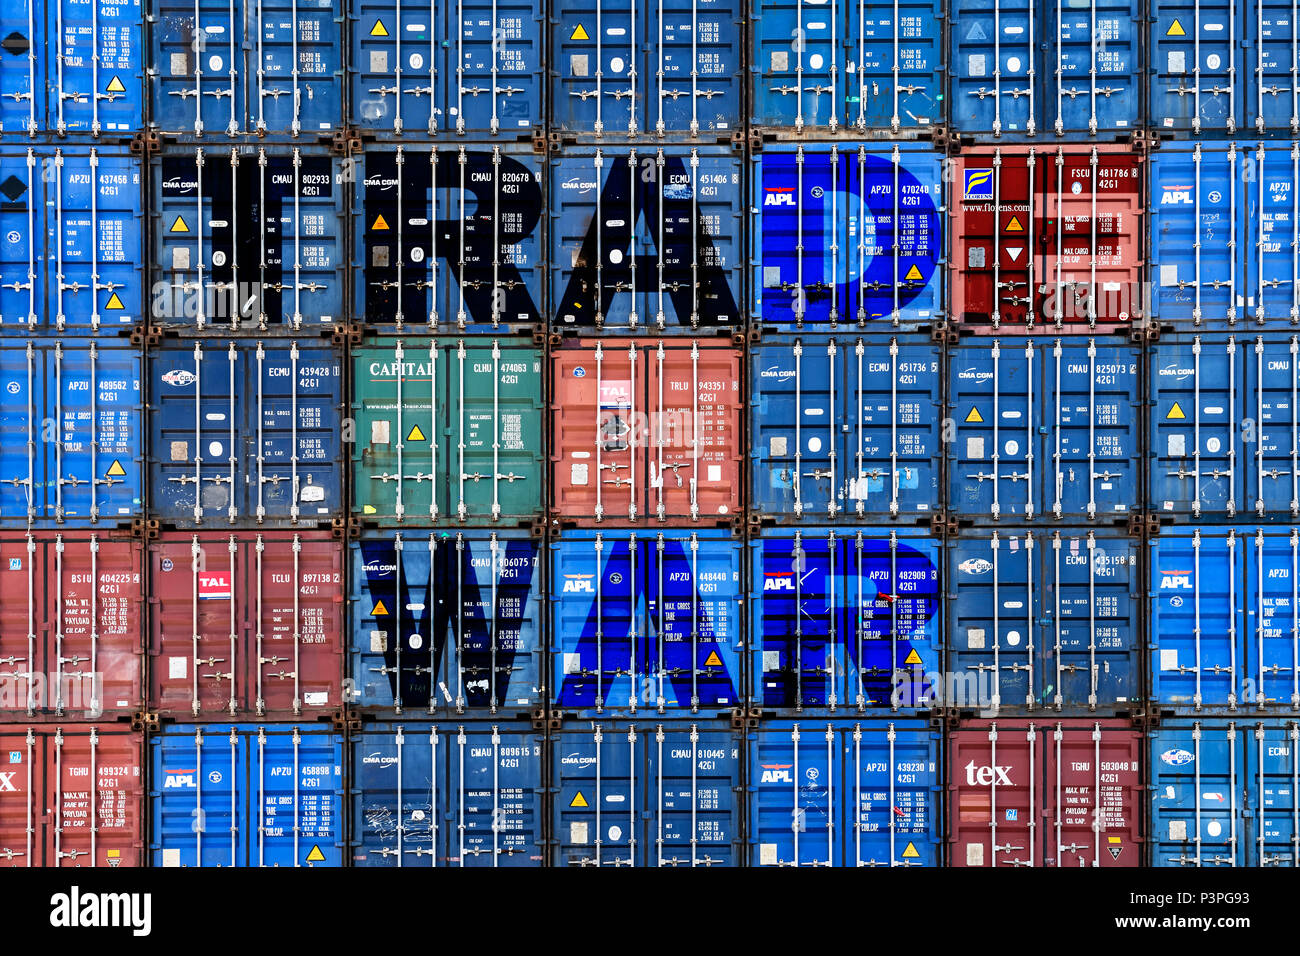 Der Handel war gestapelte Container mit der Aufschrift, Symbol Foto Handelskrieg, gestapelte Container mit Aufschrift Handelskrieg Handelskrieg, Symbolfoto Stockfoto